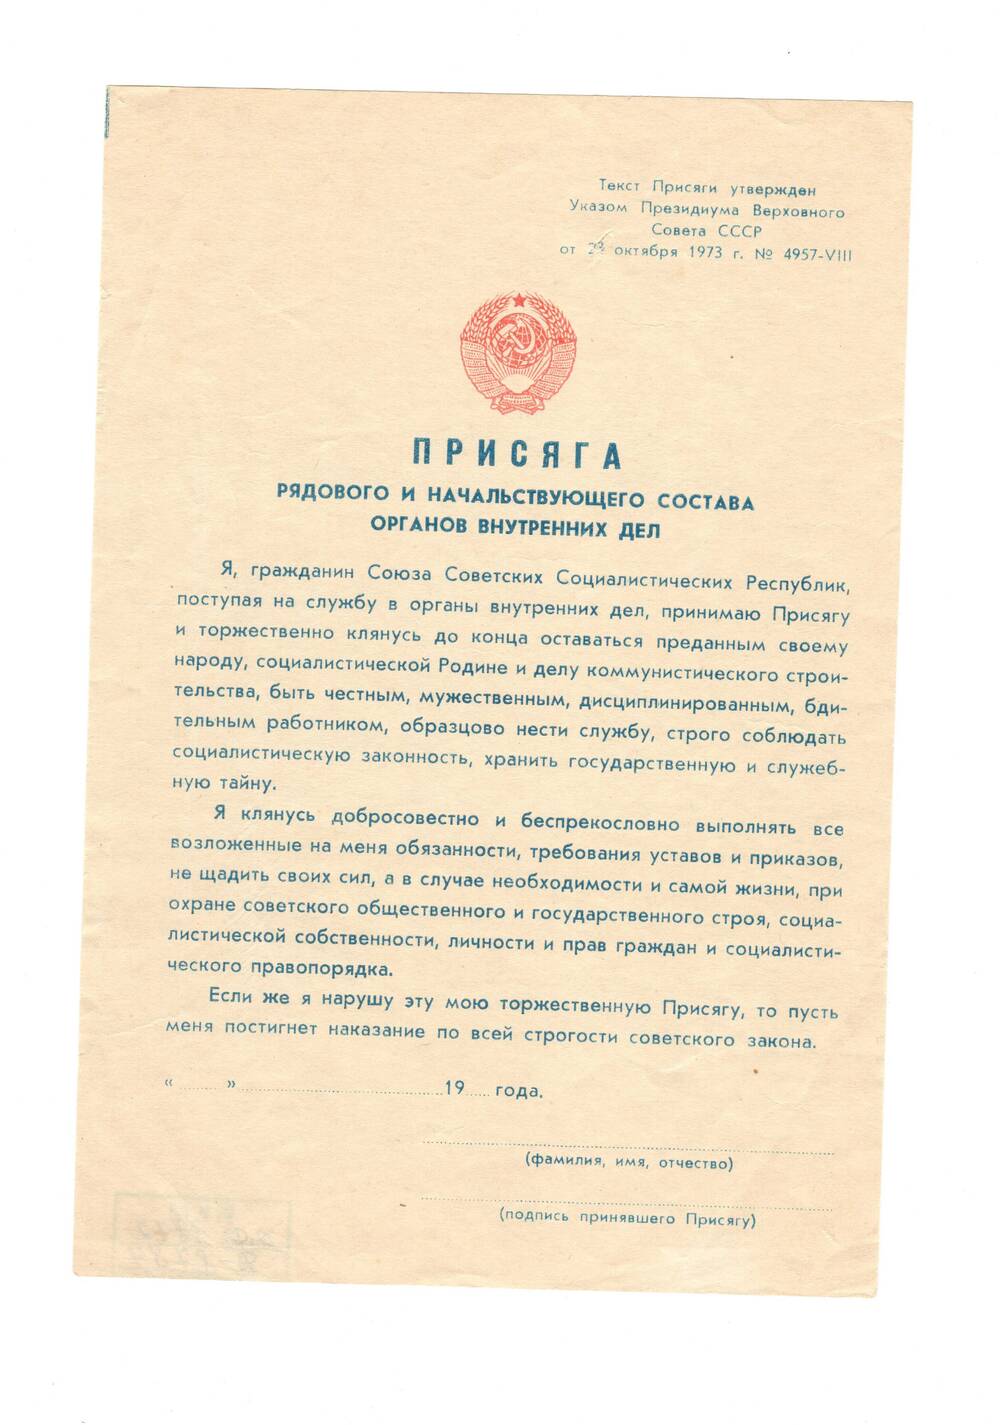 Документ. Присяга рядового и начальствующего состава органов внутренних дел, утверждённая Указом Президиума Верховного Совета СССР от 23 октября 1973 года № 4957-VIII.